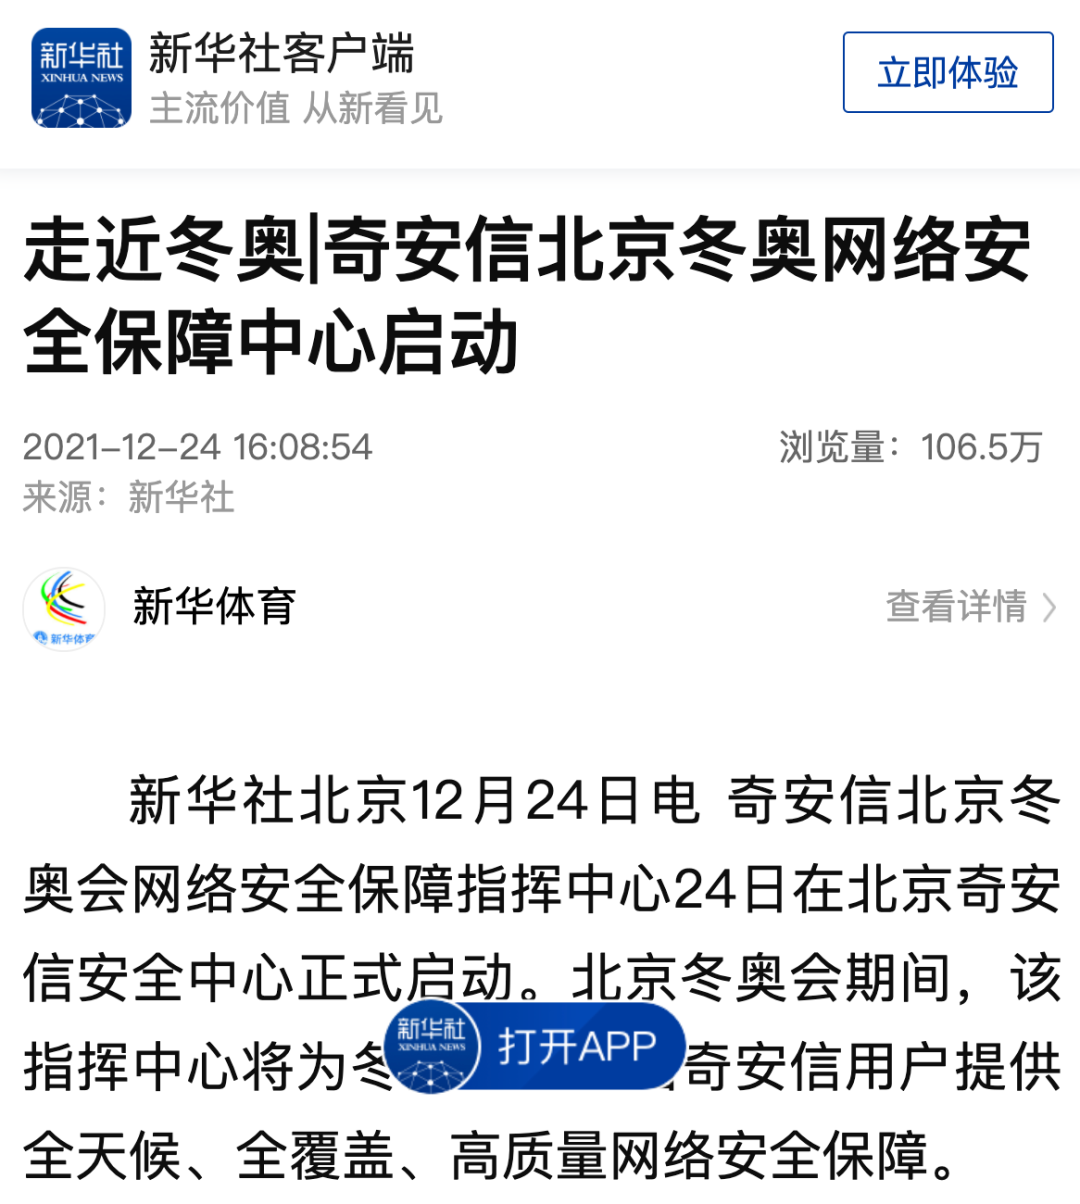 奇安信北京冬奧網絡安全保障中心啓動